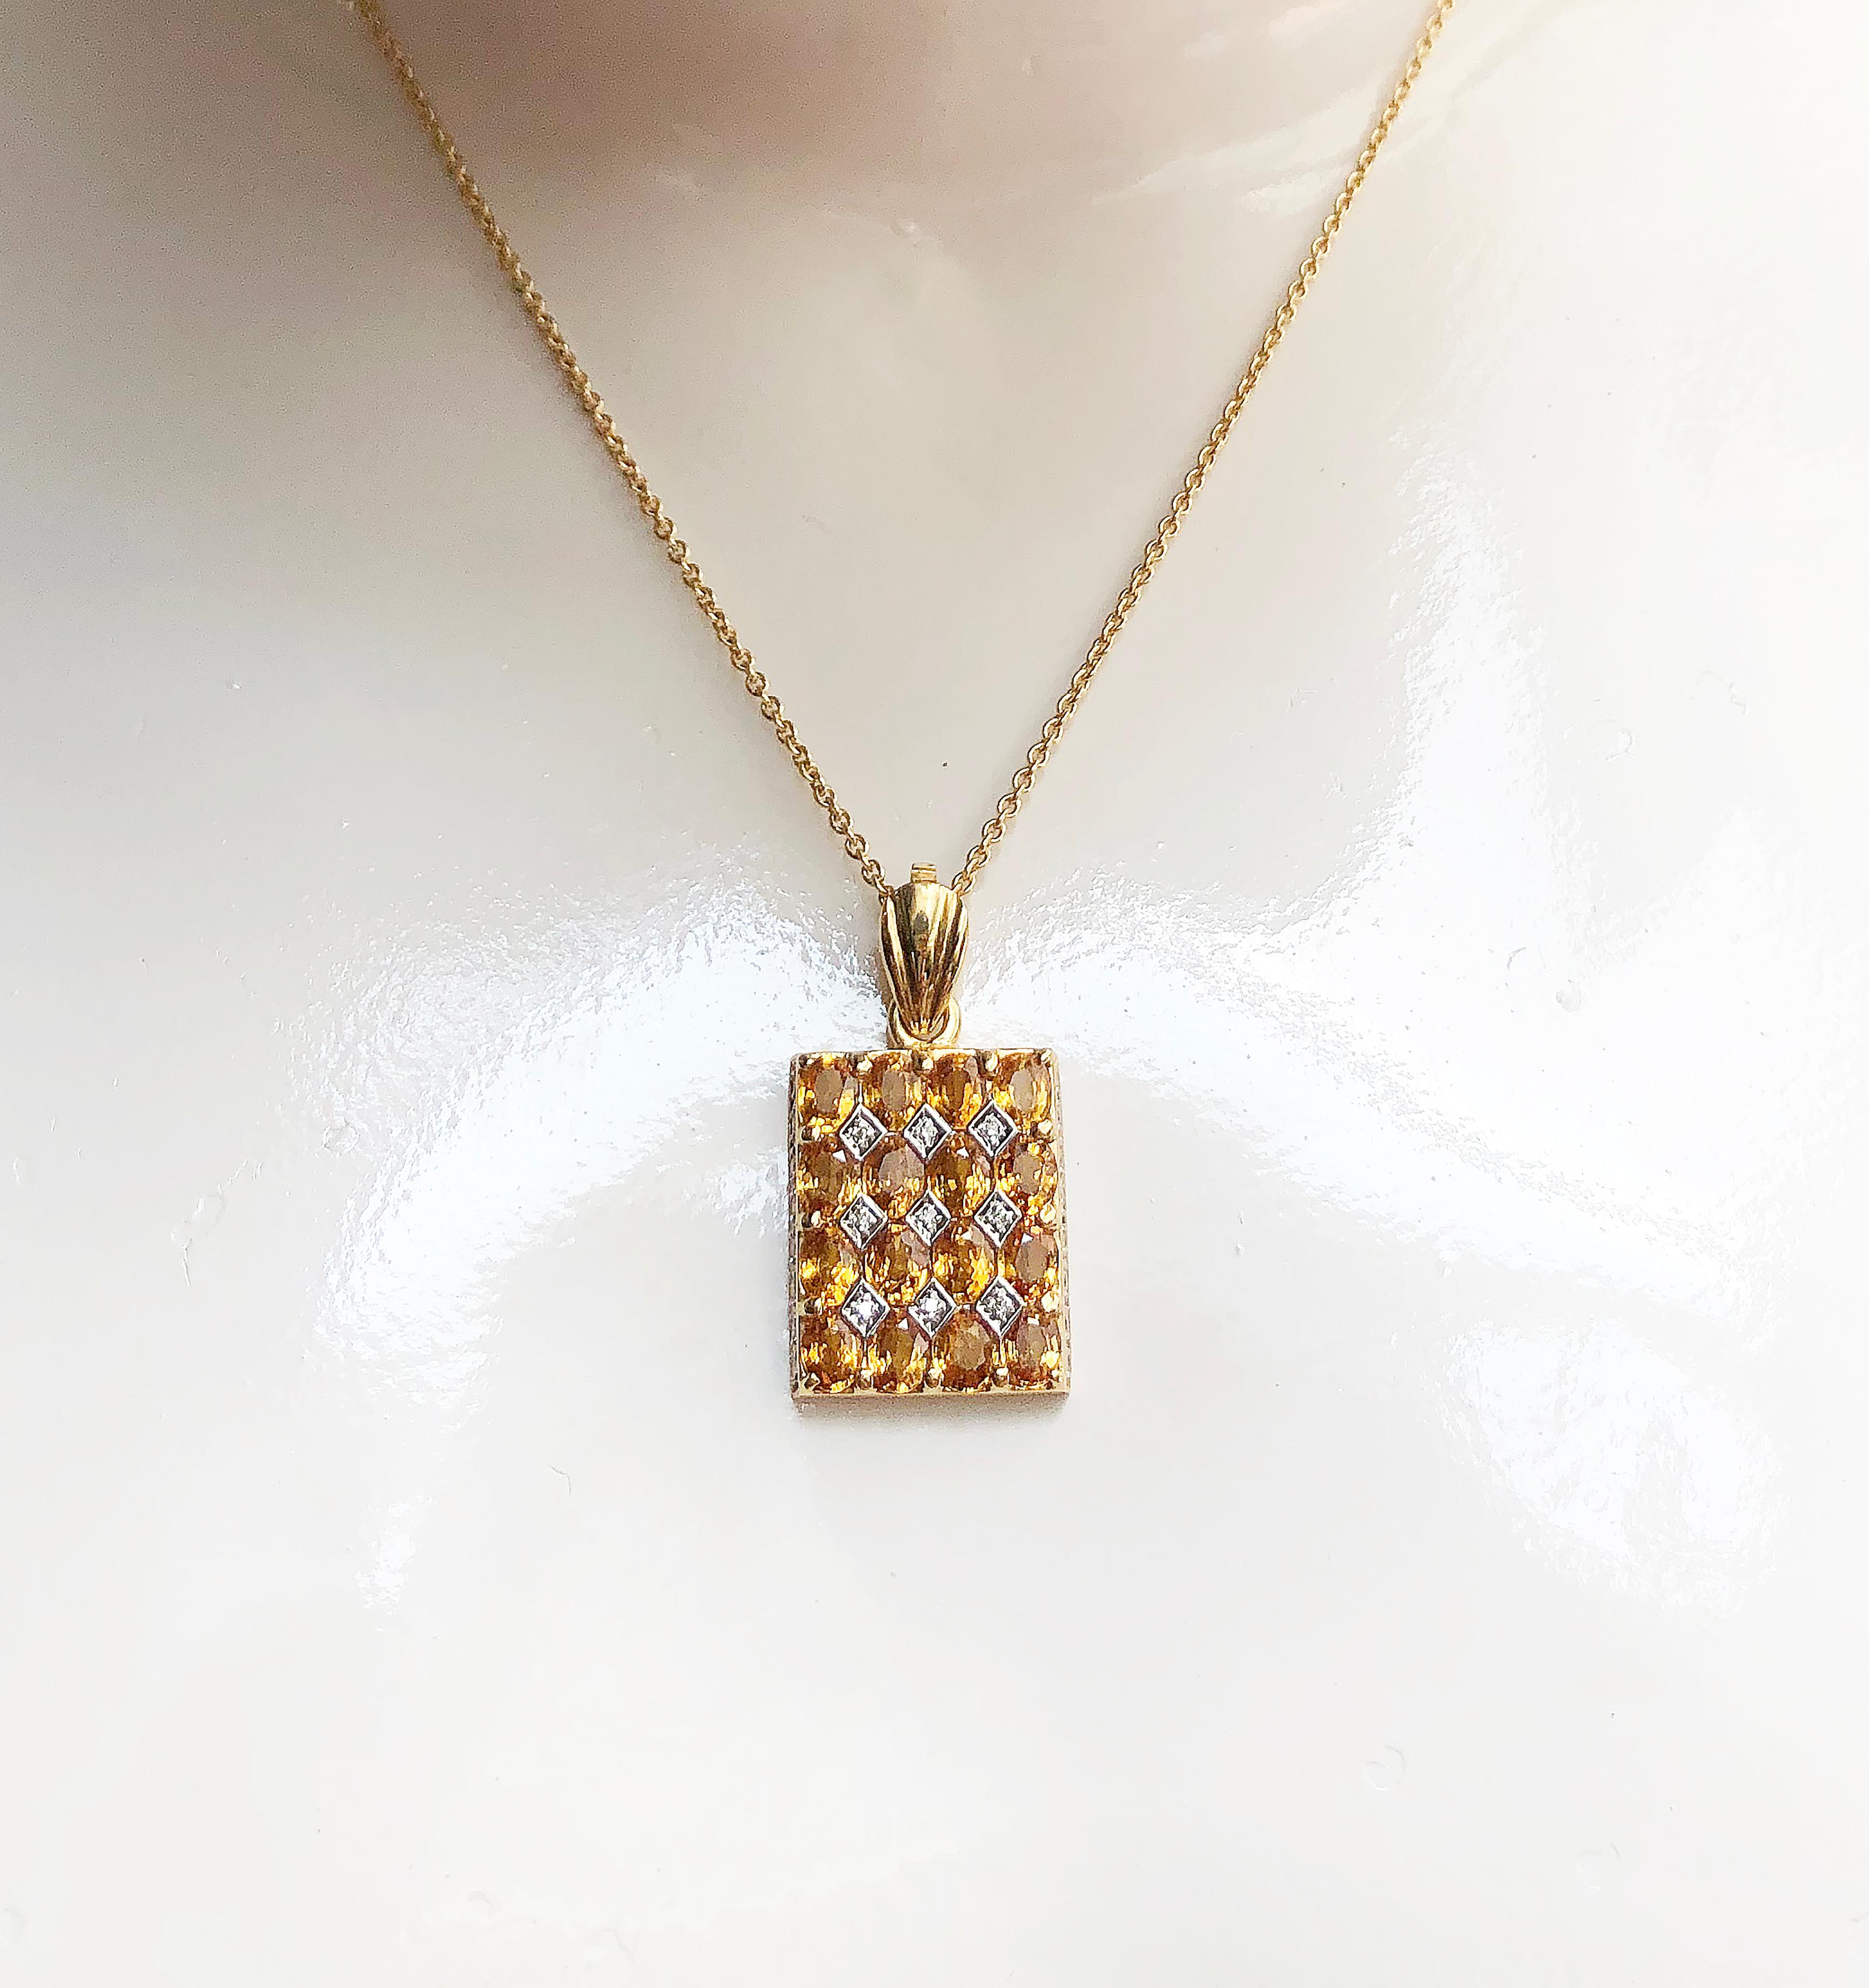 Pendentif en saphir jaune 5,40 carats et diamant 0,22 carat serti dans une monture en or 18 carats
(chaîne non incluse)

Largeur : 2,6 cm
Longueur : 3,0 cm 

